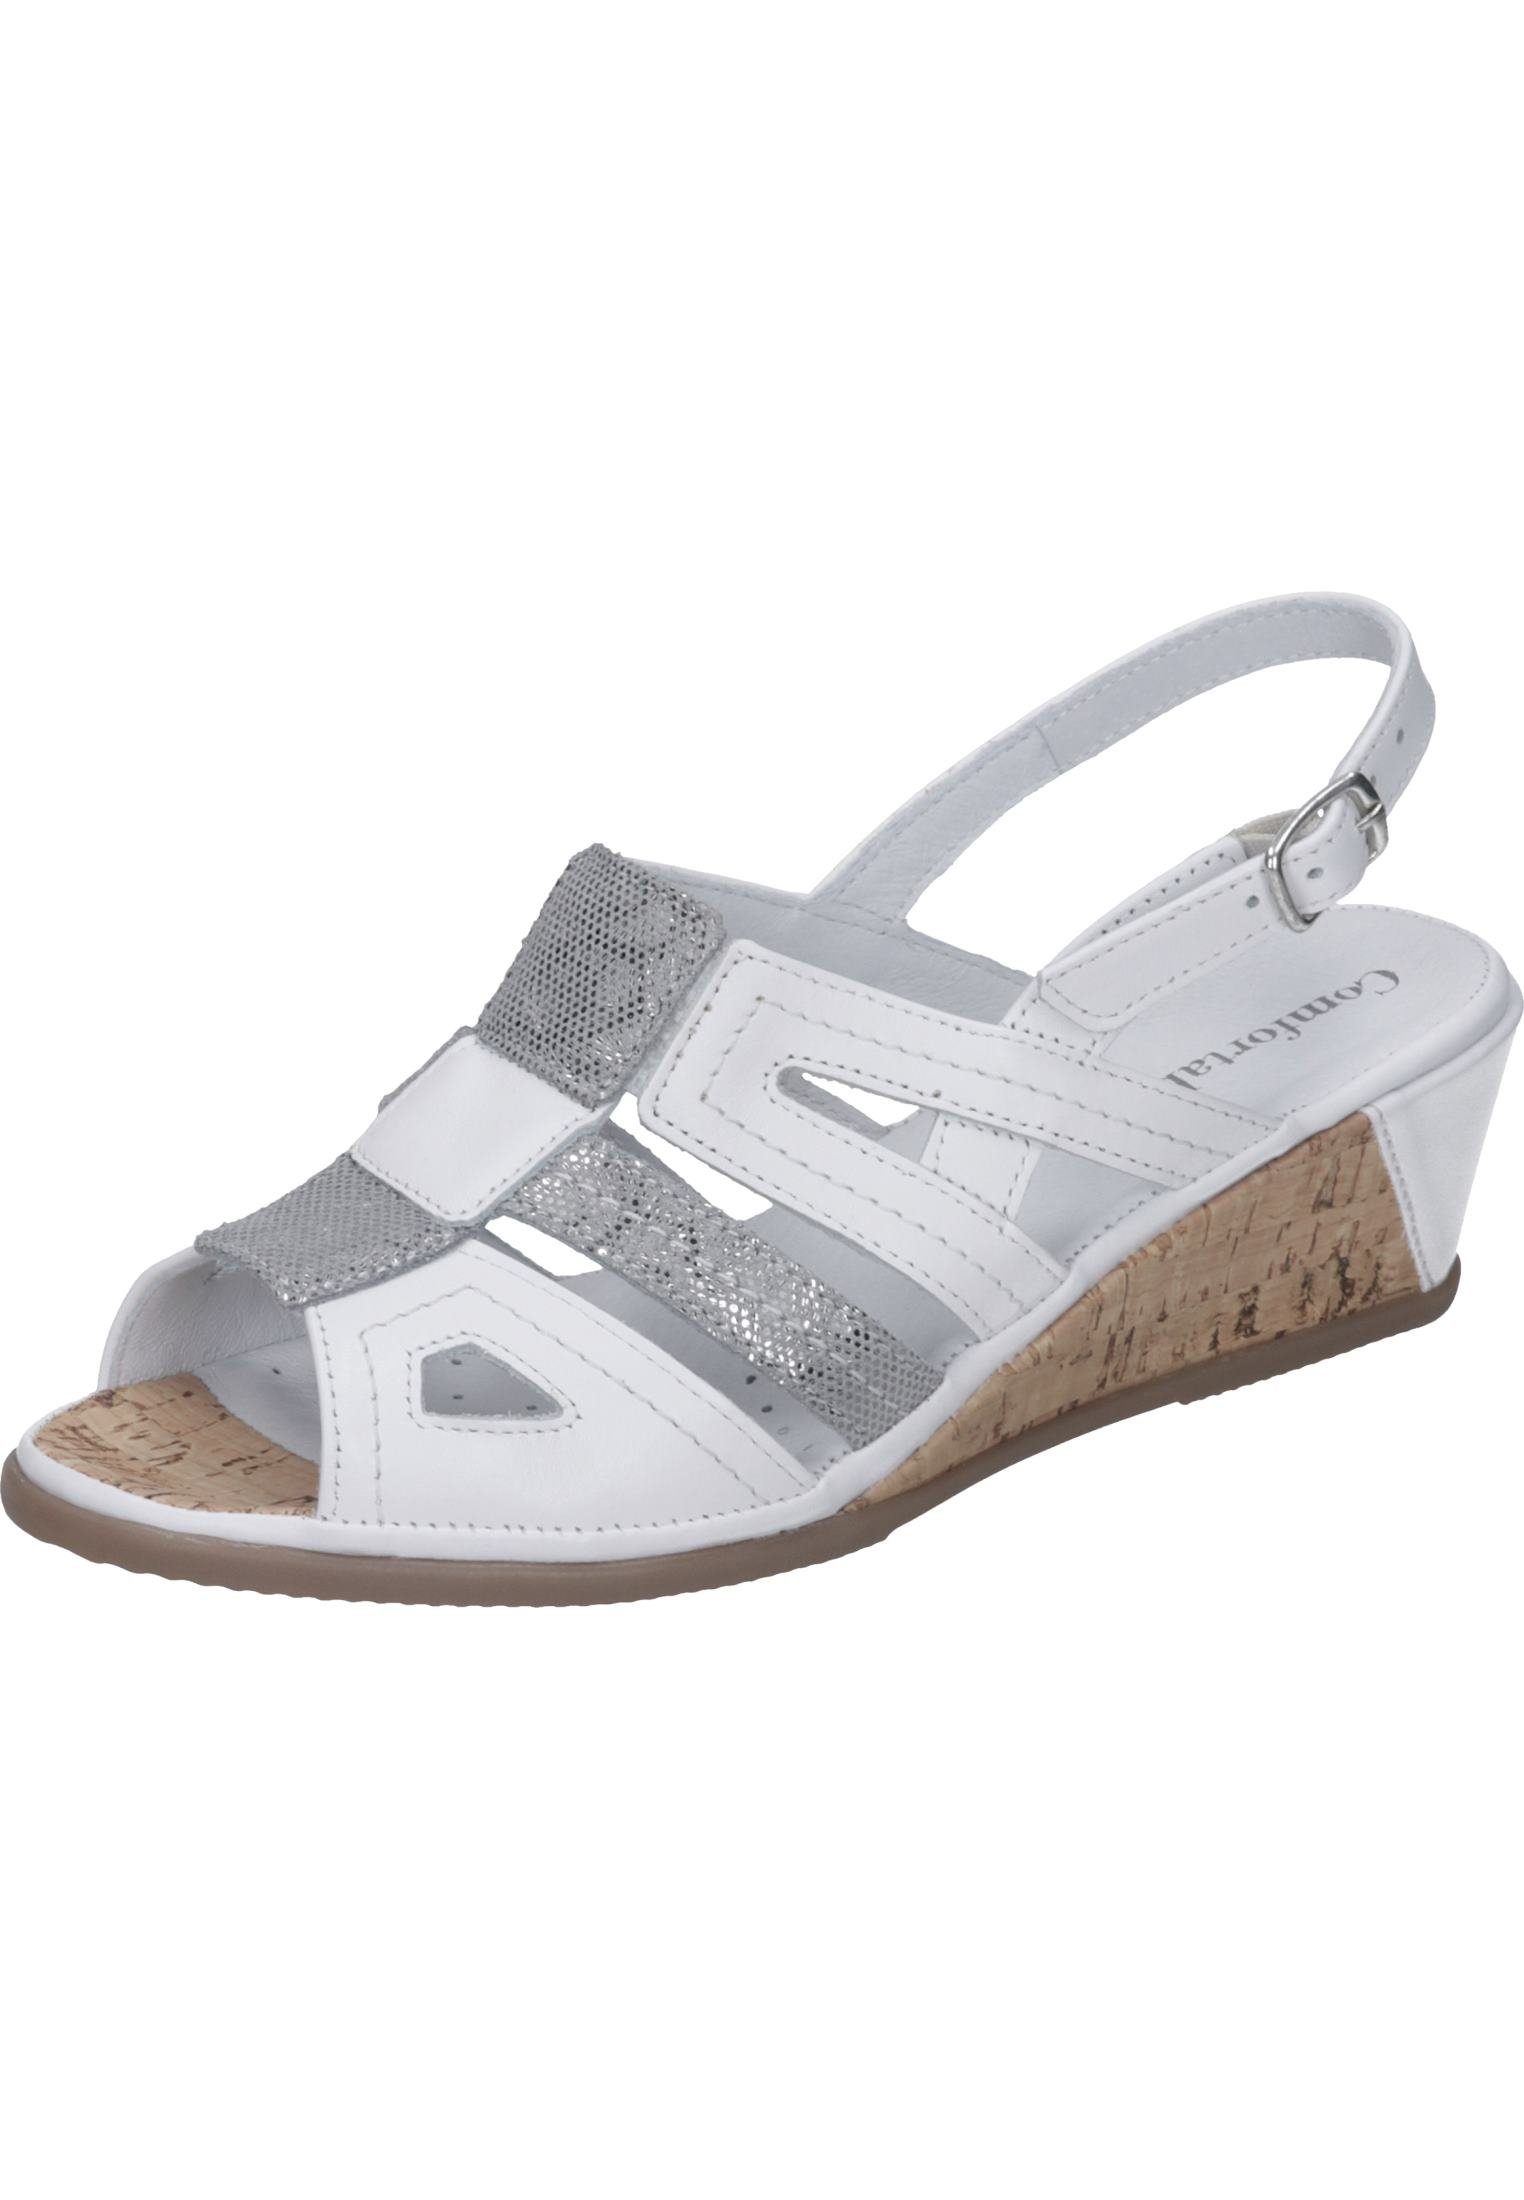 Comfortabel Sandalen Keilsandalette mit Gummizug weiß | Sandaletten